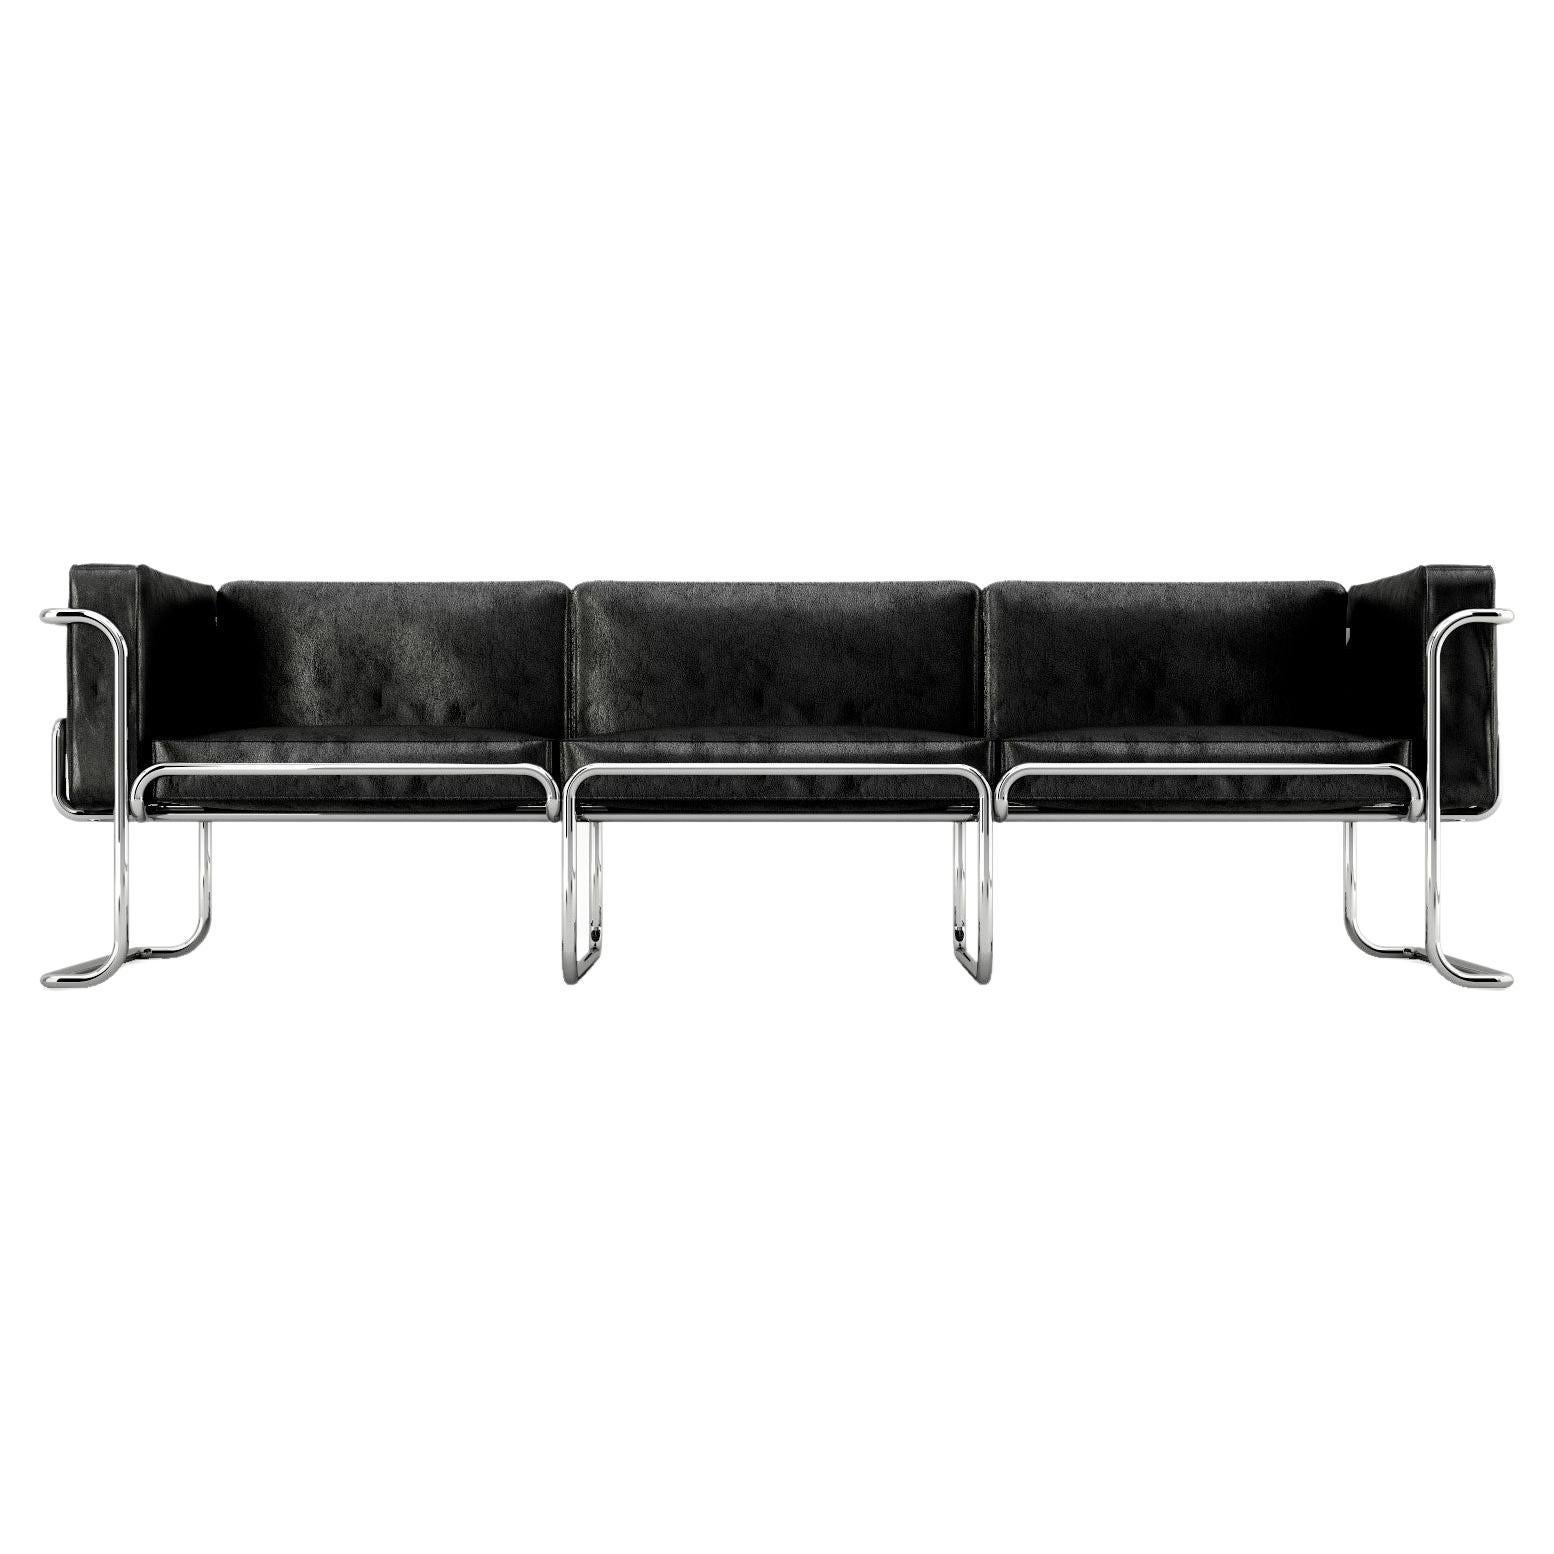 Lotus 3-Sitz-Sofa – modernes schwarzes Ledersofa mit Edelstahlbeinen